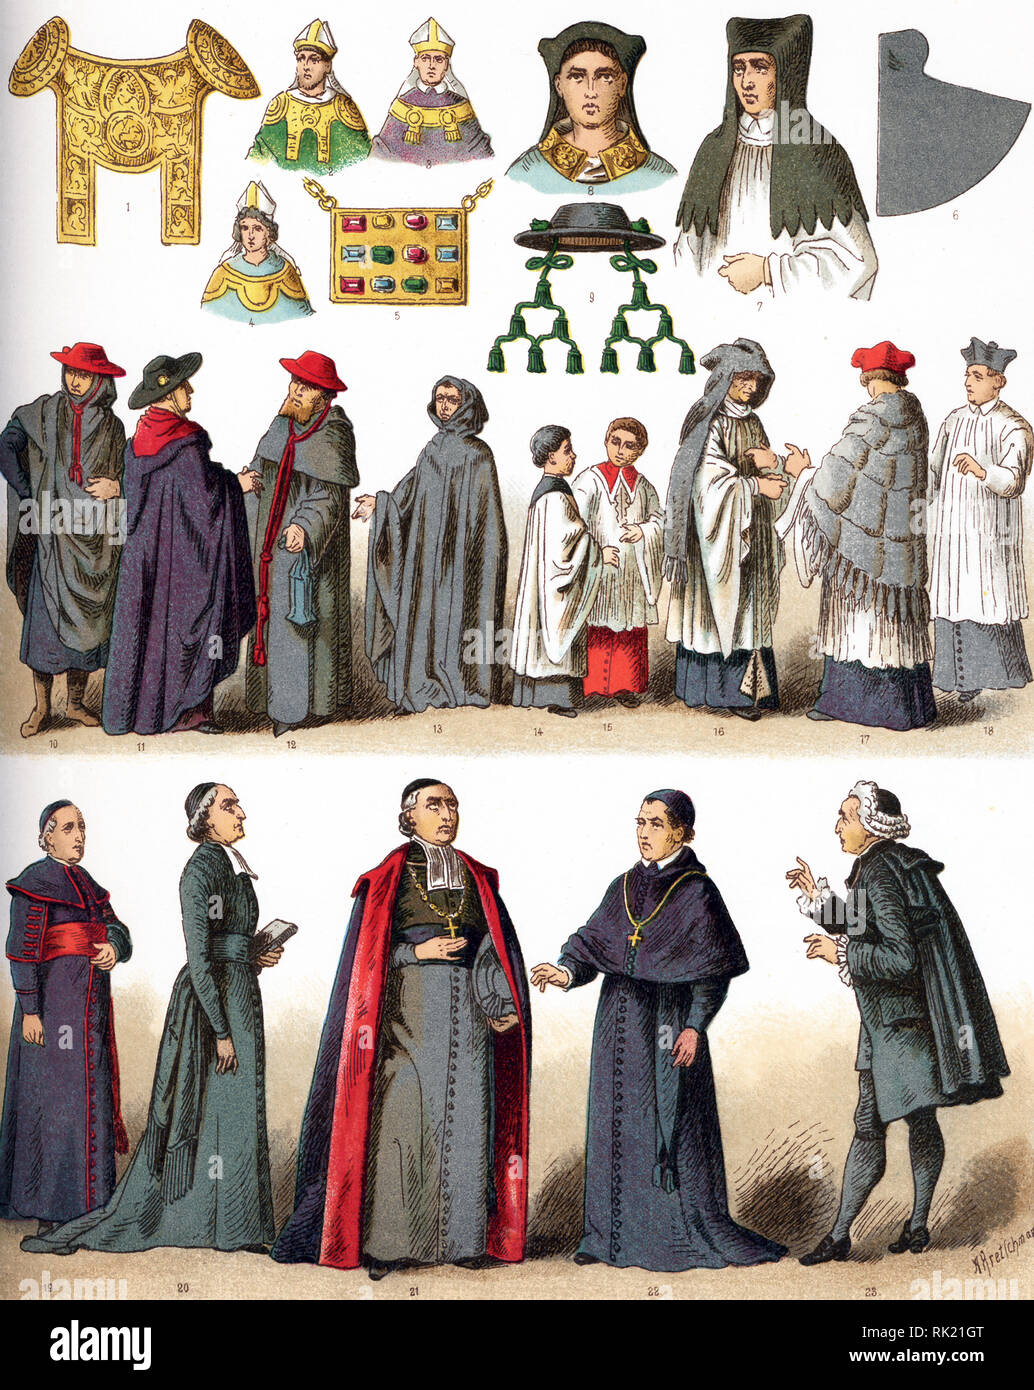 Le illustrazioni riportate di seguito mostrano i costumi ecclesiastici.  Essi sono in fila, da sinistra a destra e dall'alto verso il basso: 1  attraverso 4 razionale (utilizzato dai vescovi tedeschi 12th-14i secoli;